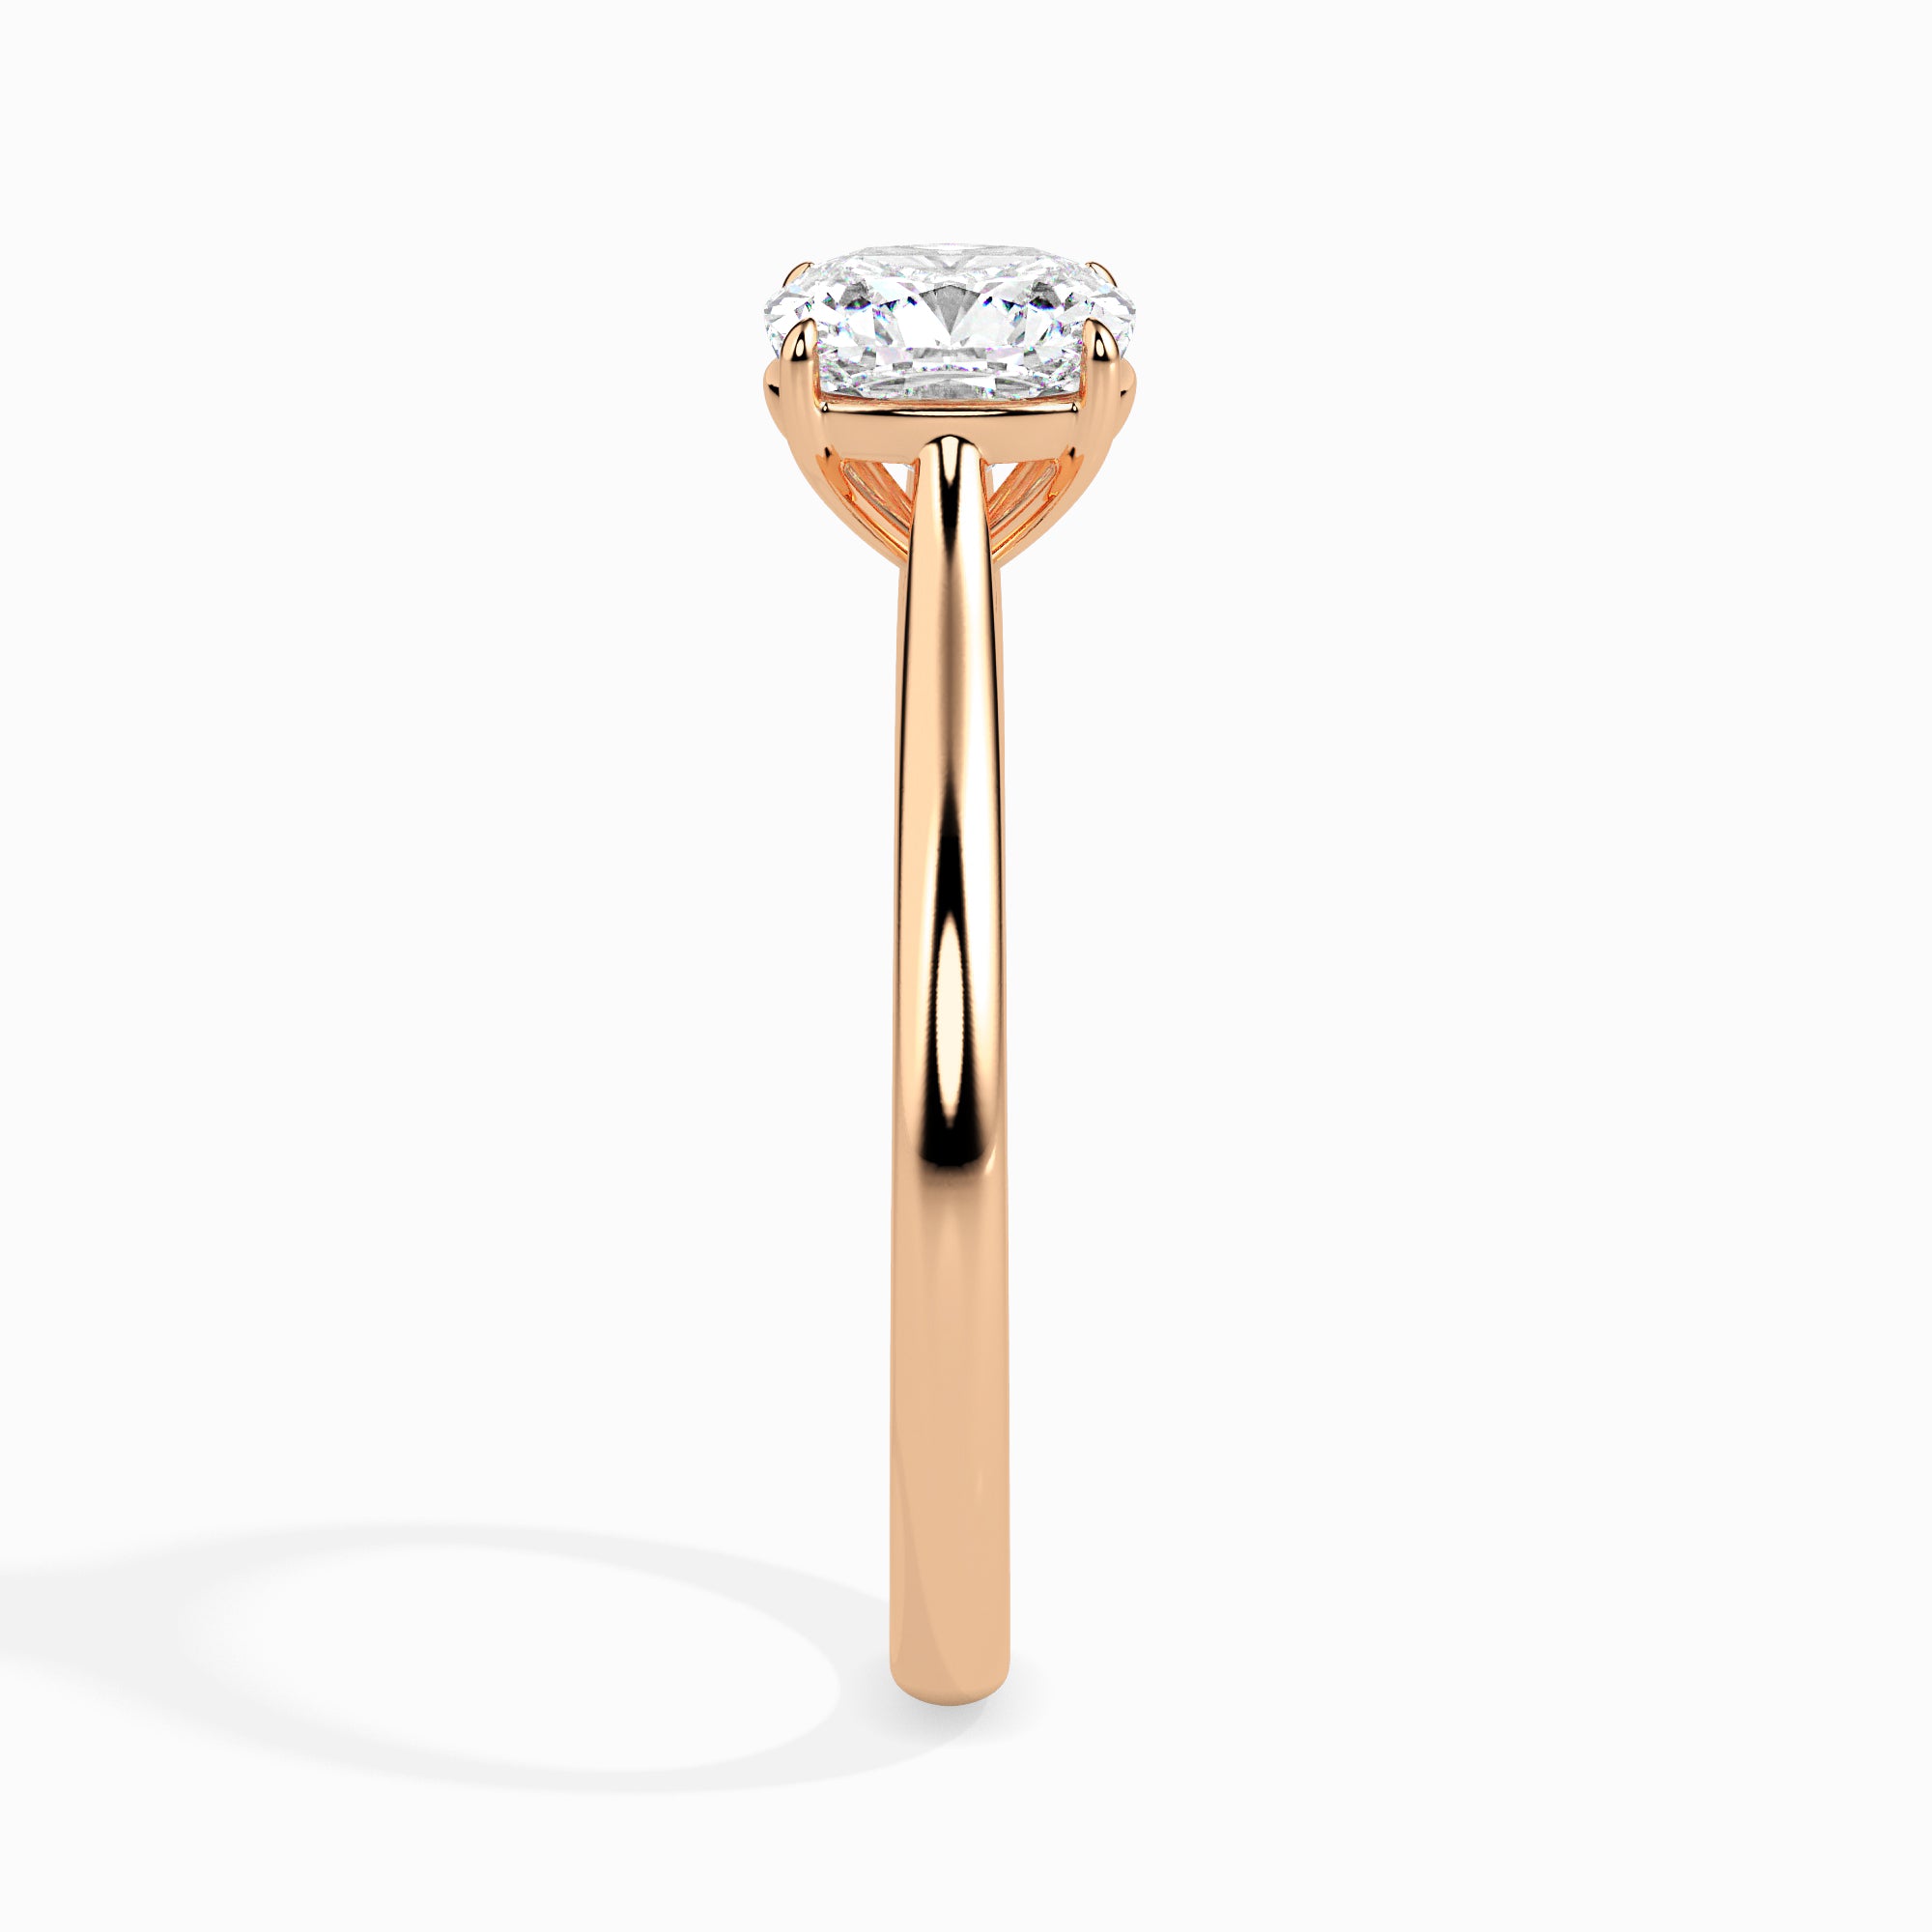 50-Pointer Cushion Cut Solitaire Diamond 18K Rose Gold Ring JL AU 19003R-A